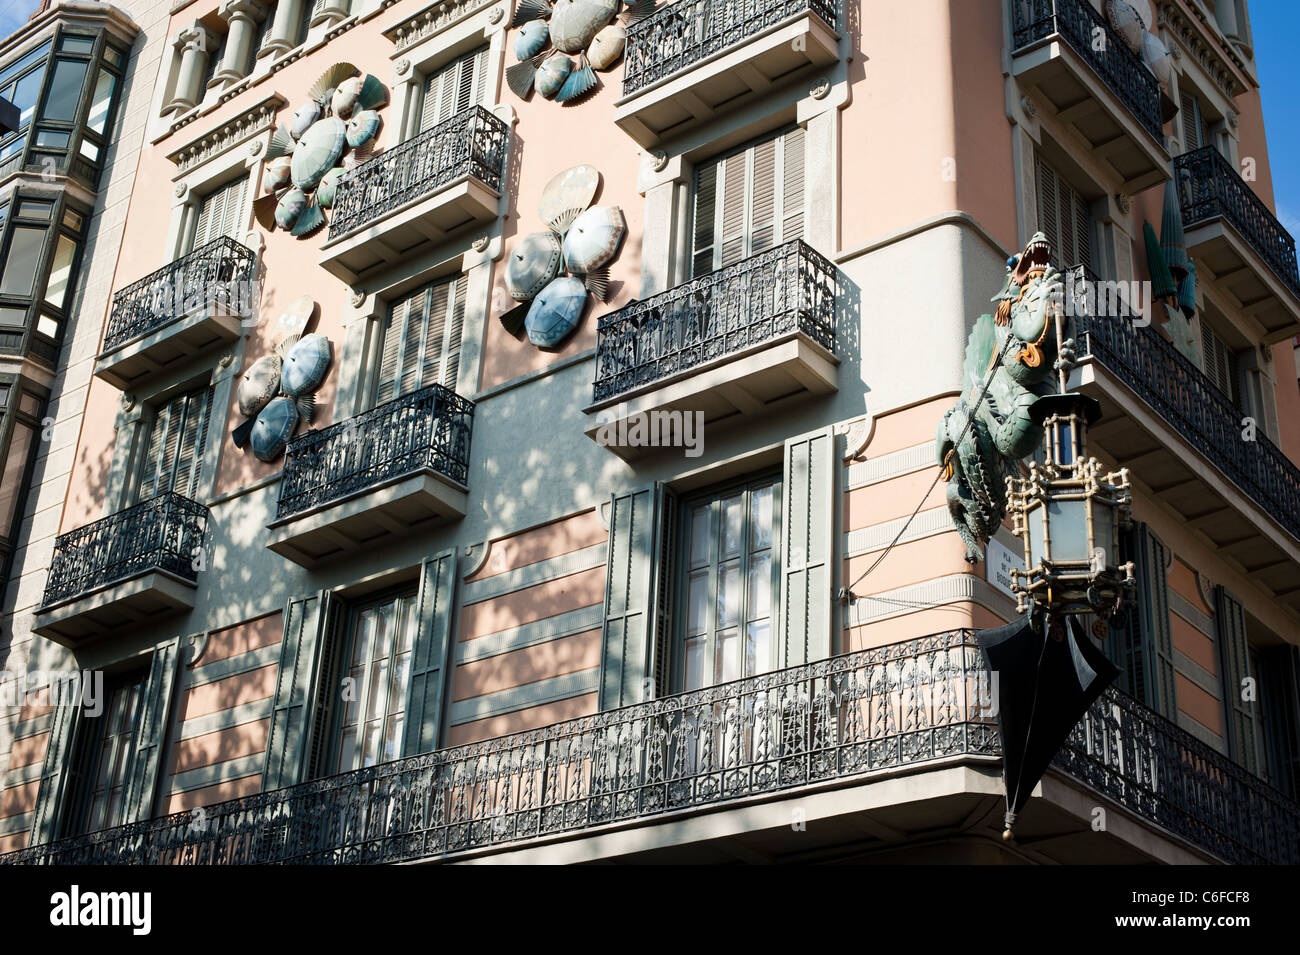 Casa de los paraguas or House of umbrellas at Ramblas in Barcelona city  Stock Photo - Alamy